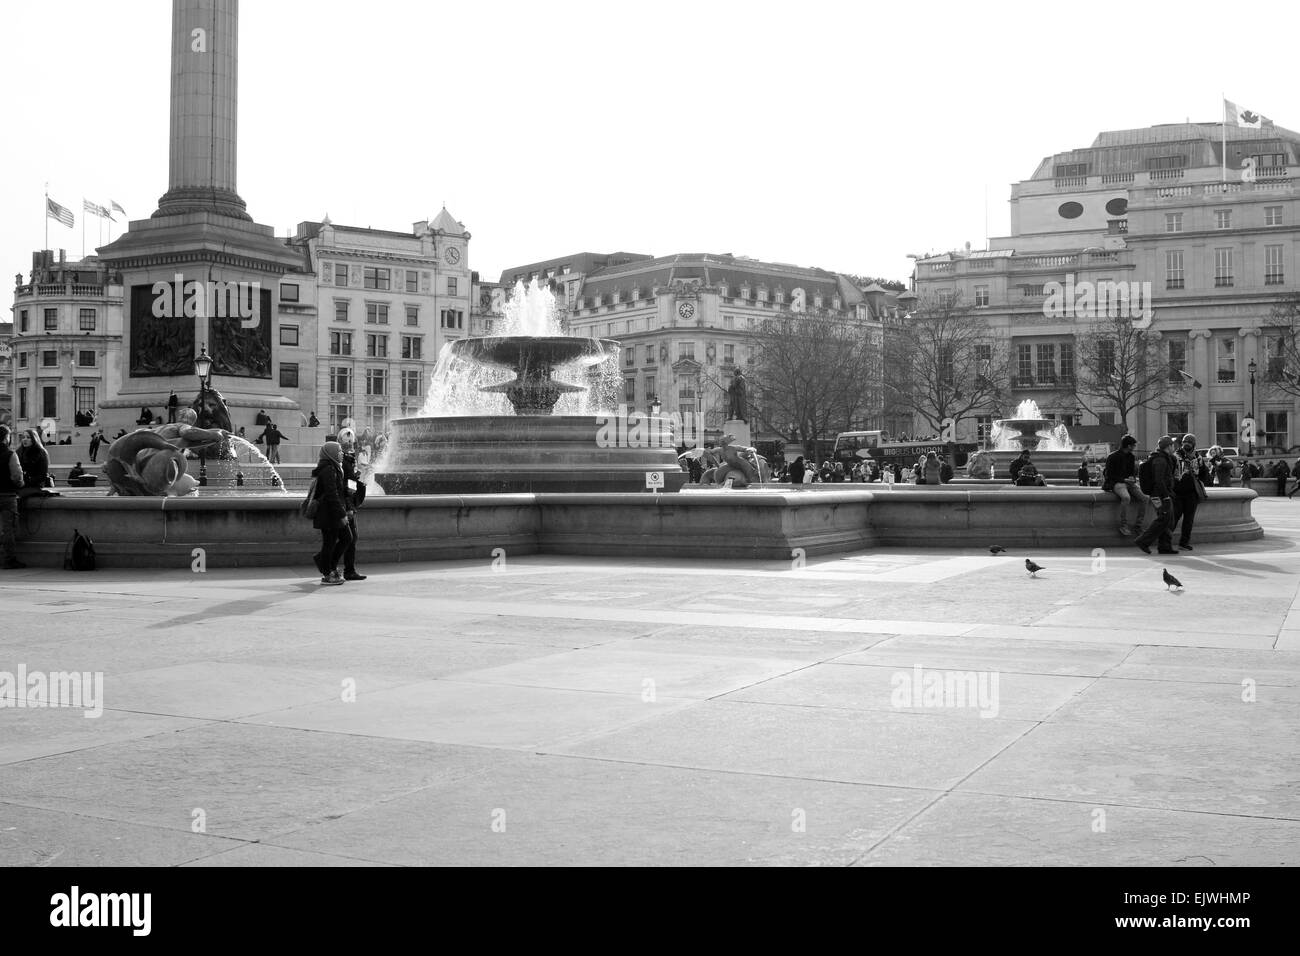 Une vue sur les fontaines et d'une partie de la Colonne Nelson à Trafalgar Square, Londres, Angleterre. Banque D'Images